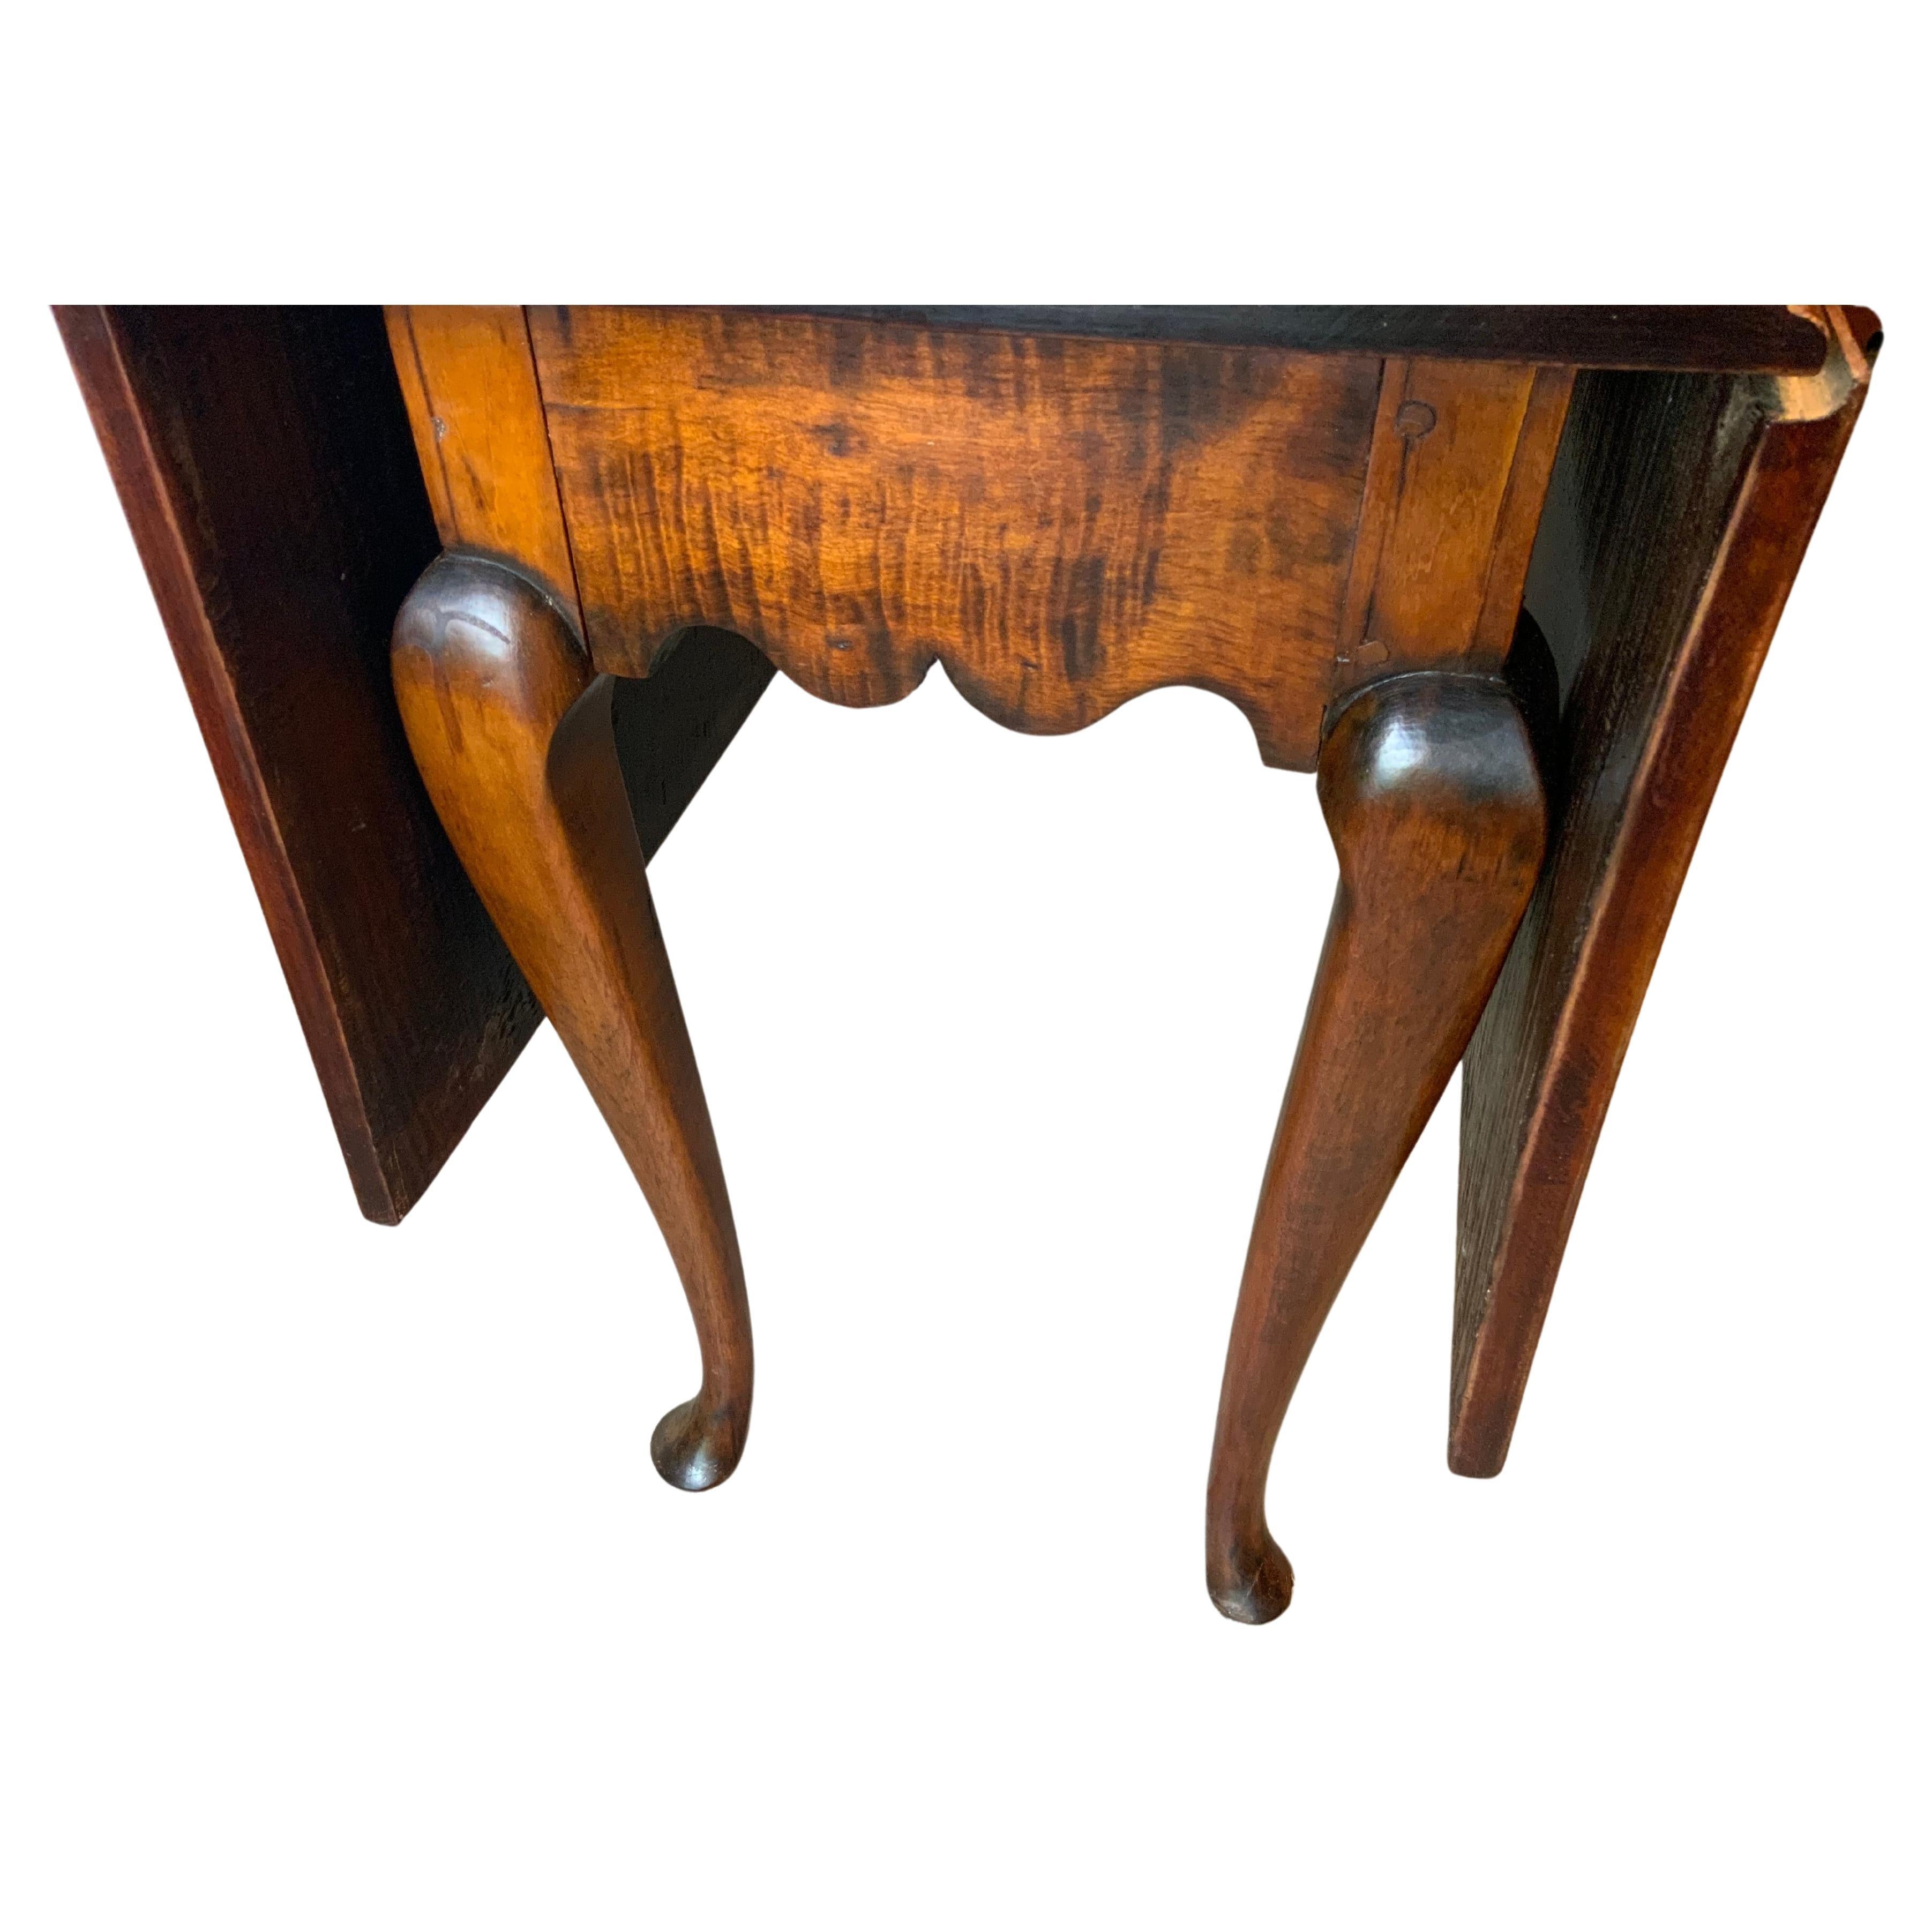 Ein sehr attraktives frühes Federal Queen Anne Curly Maple Drop leaf Tisch mit einer großen gealterten Farbe und Patina auf einem älteren nachgearbeitet Oberfläche.  Möglicherweise handelt es sich um eine sehr frühe Verbindung eines Aufsatzes aus